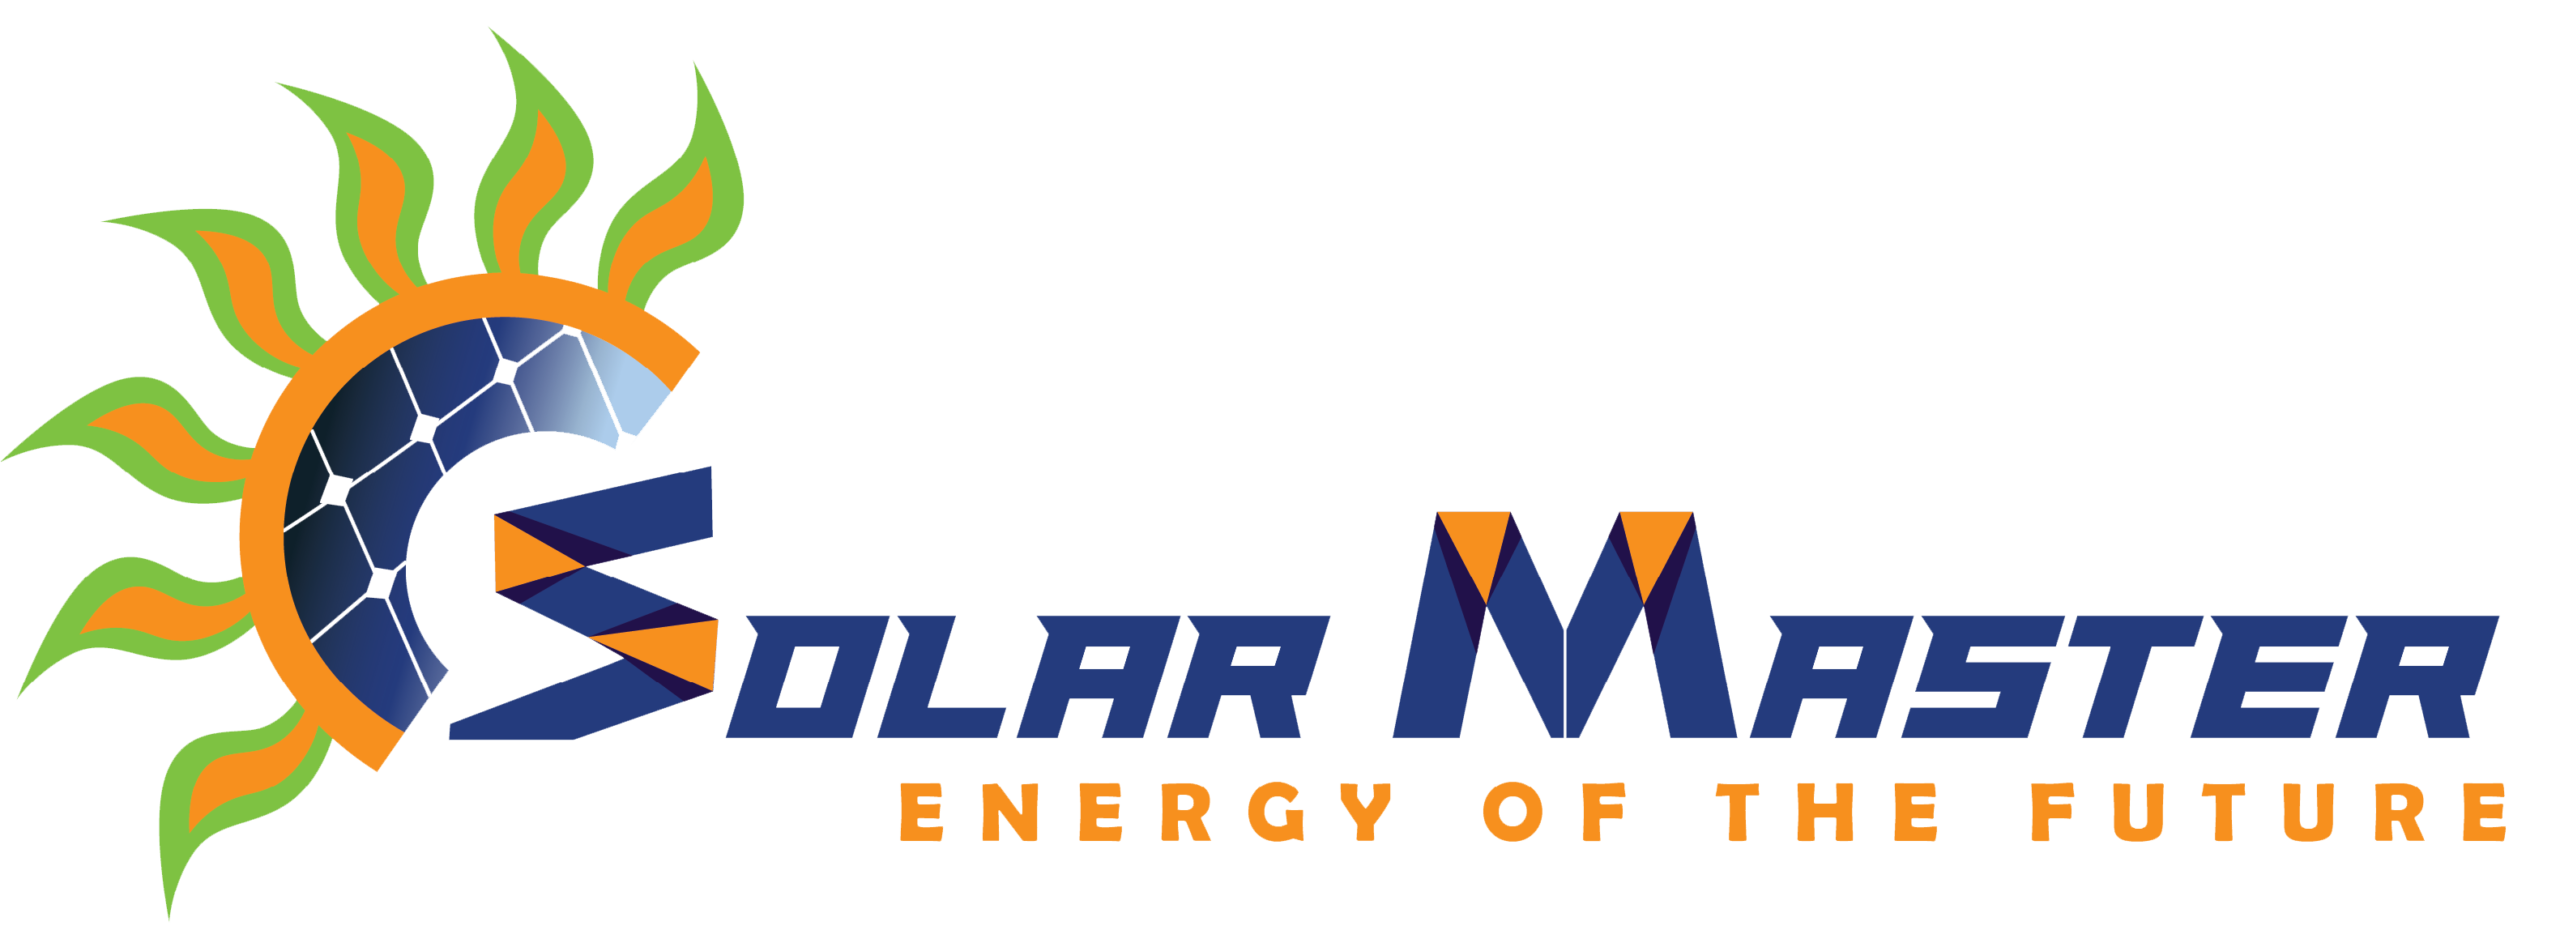 SolarMaster